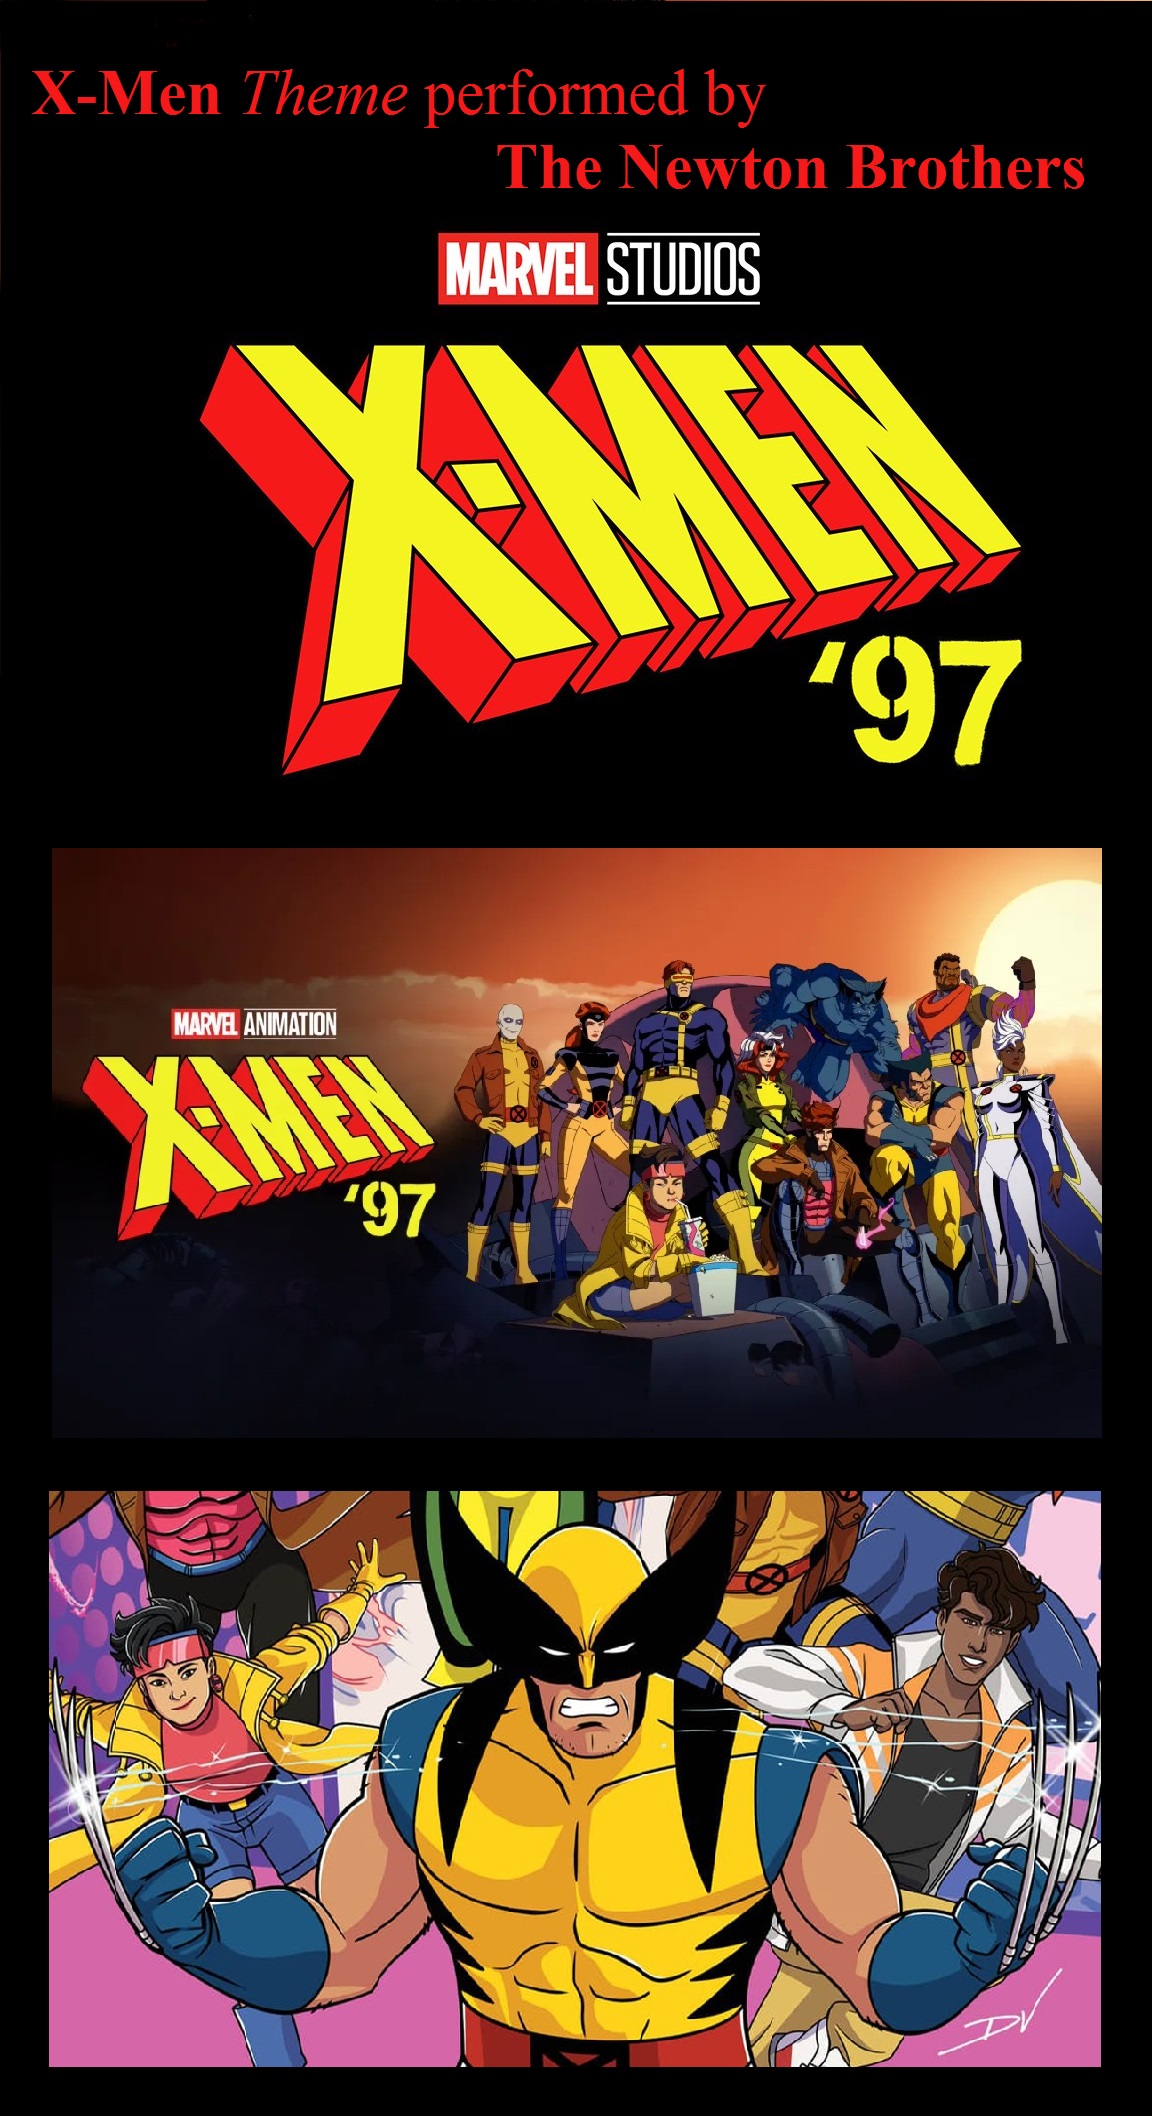 X-Men 97 Theme